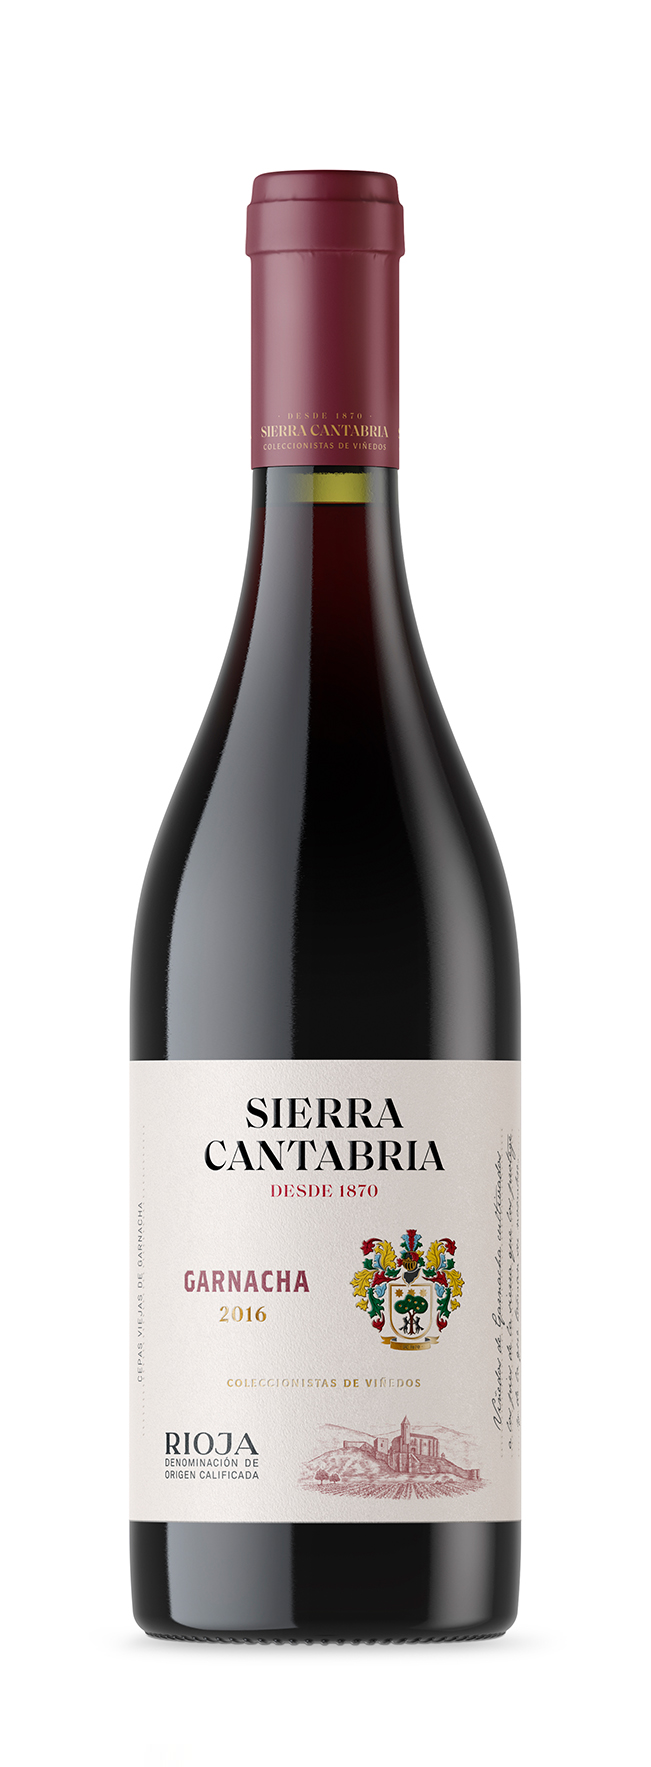 Sierra Cantabria Garnacha Bottle Photo